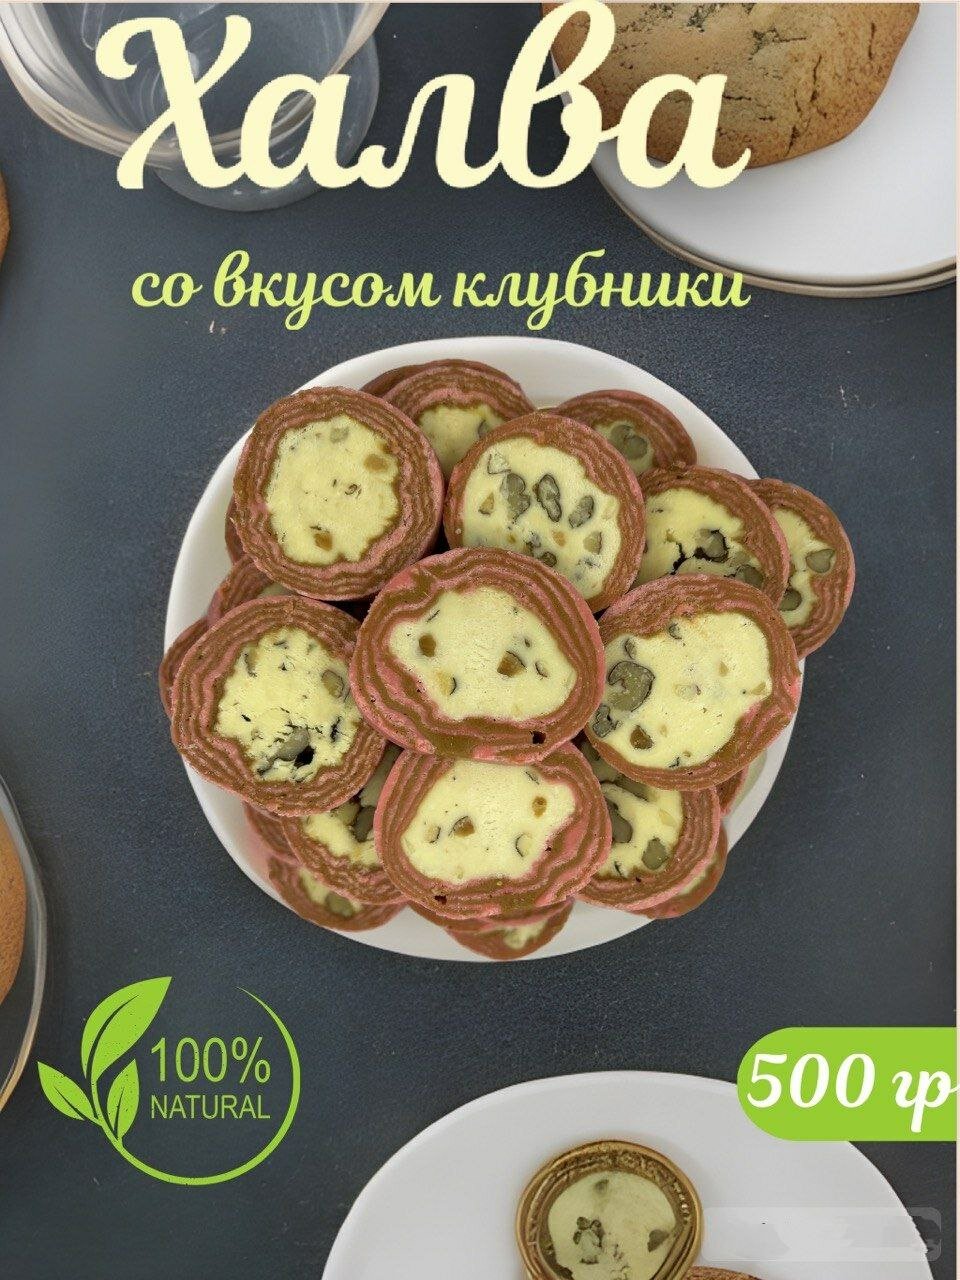 Халва узбекская "Коканд" со вкусом клубника 500 гр